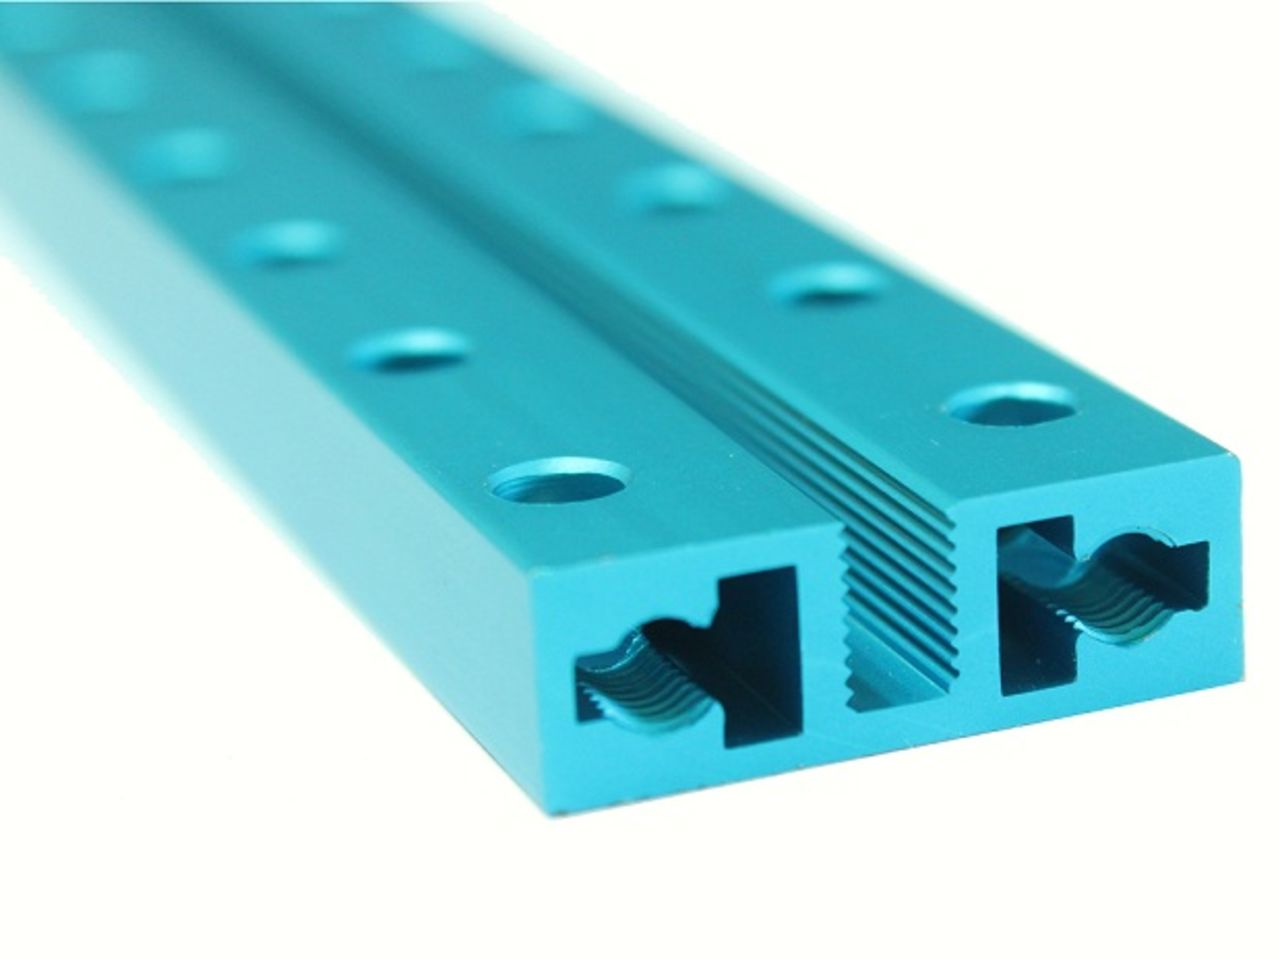 El diseño de ranura roscada significa que no necesita tuercas para conectar módulos Makeblock y el espacio entre los agujeros corresponde a bloques de Lego.<br />